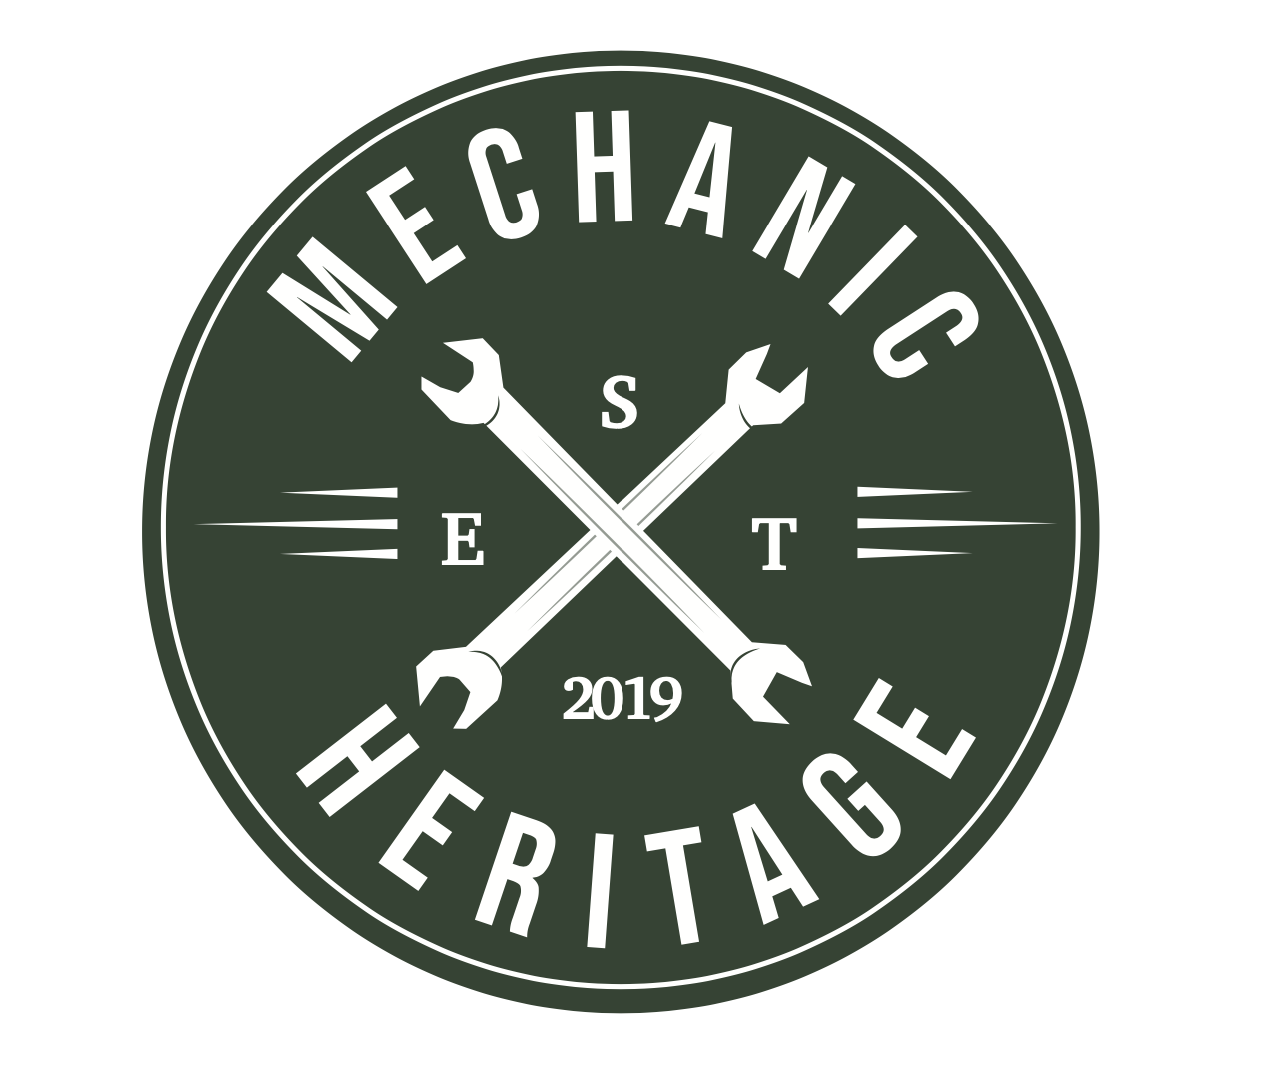 Mechanic Heritage